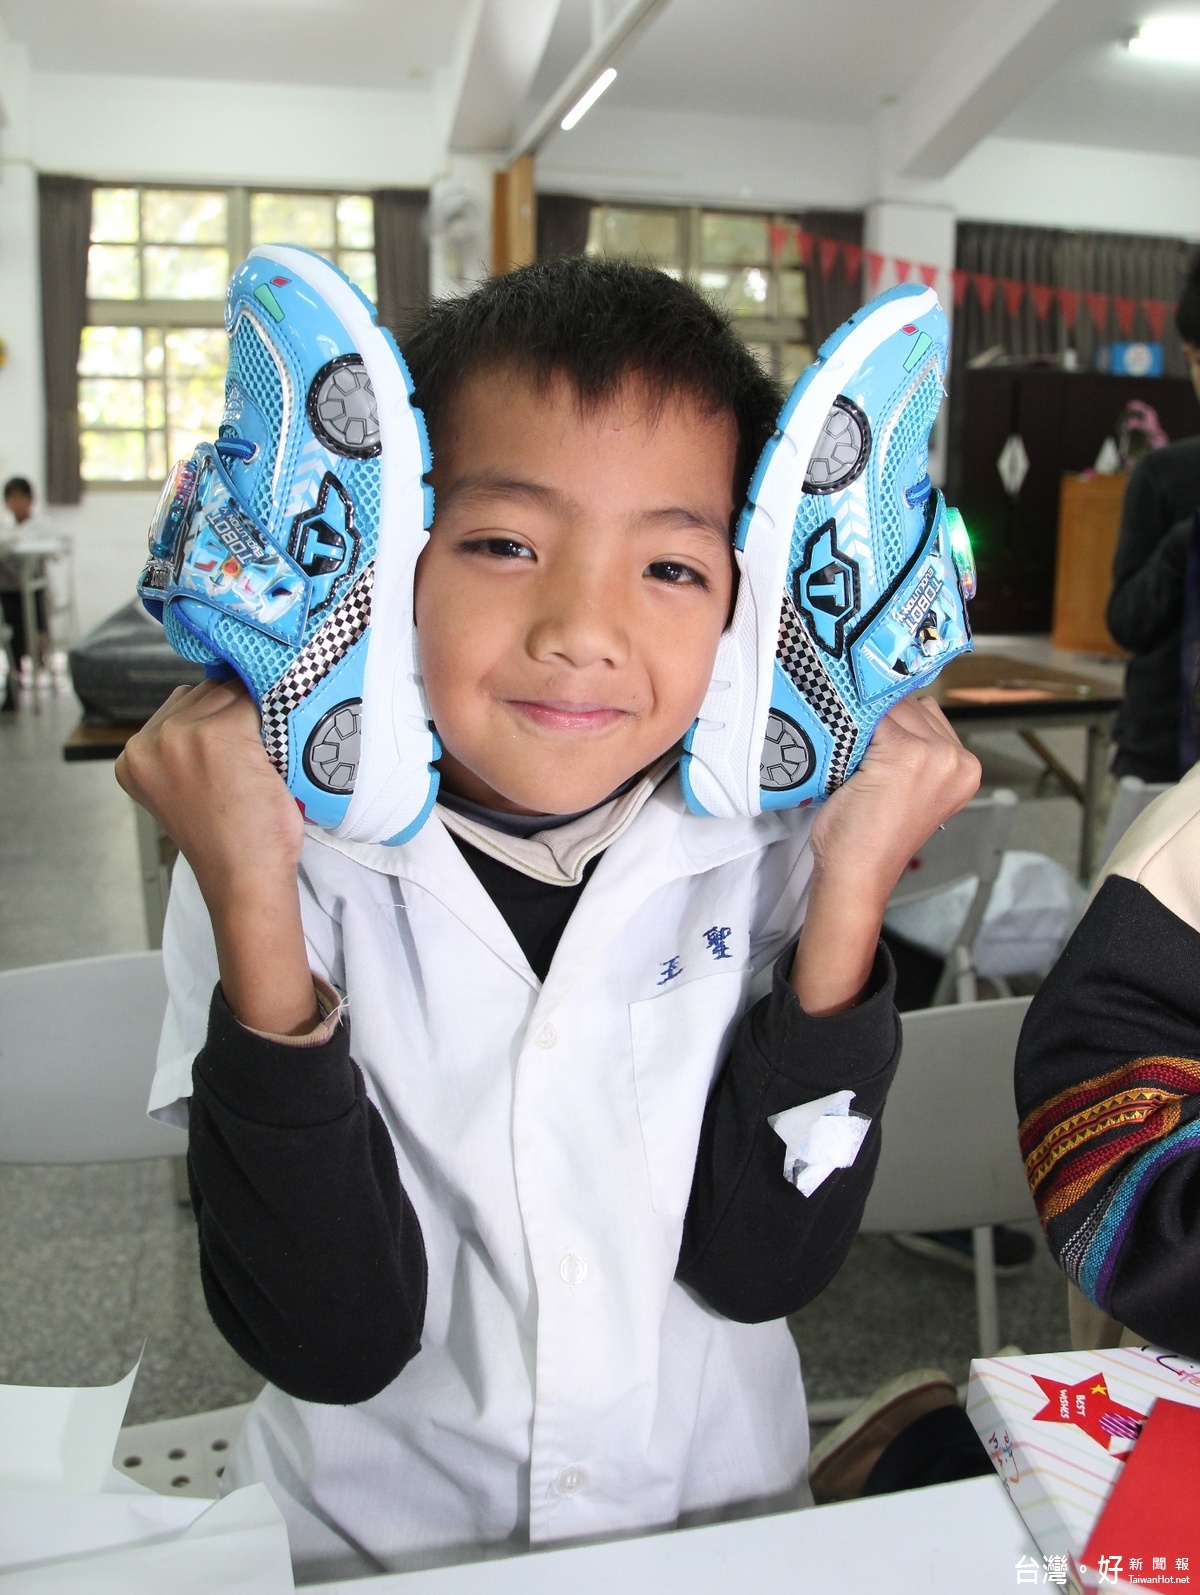 小朋友獲得球鞋的心願達成了，露出了滿足的笑容。